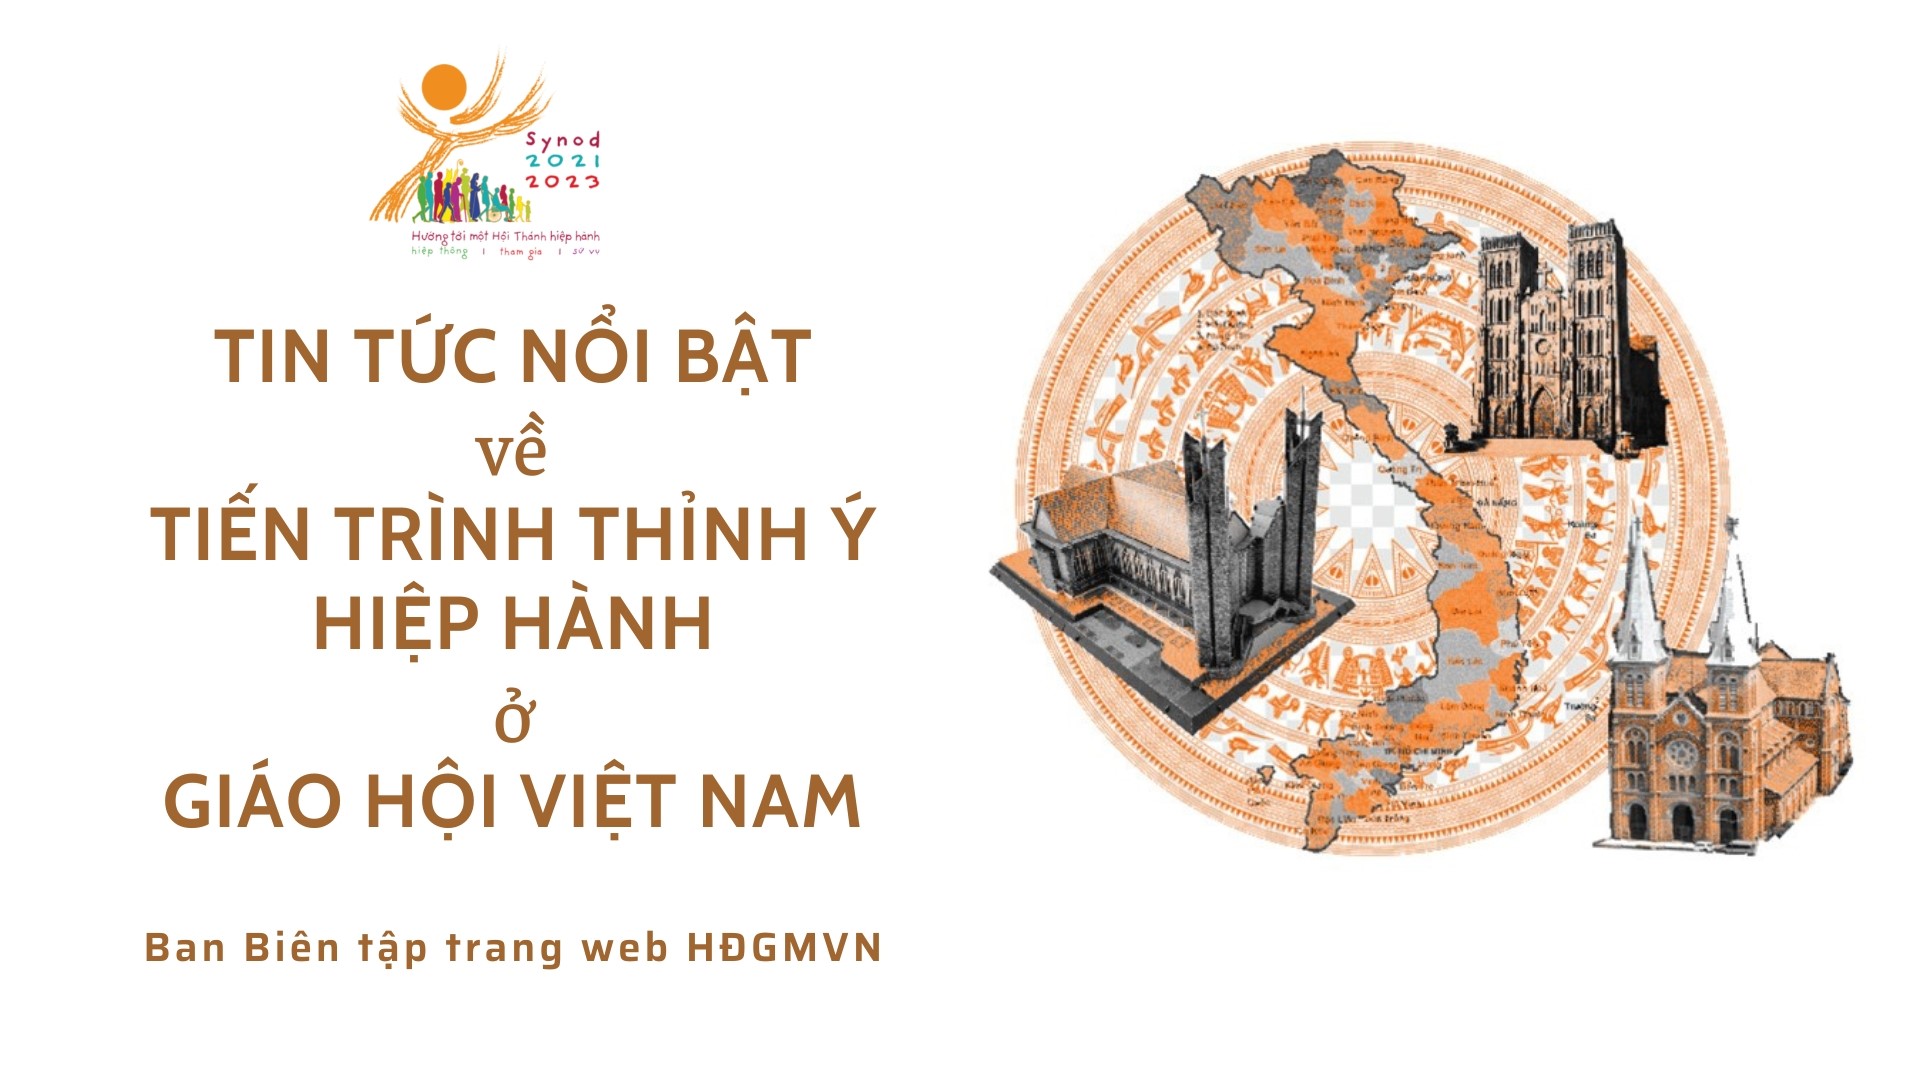 Tin tức nổi bật về tiến trình thỉnh ý hiệp hành ở Giáo hội Việt Nam